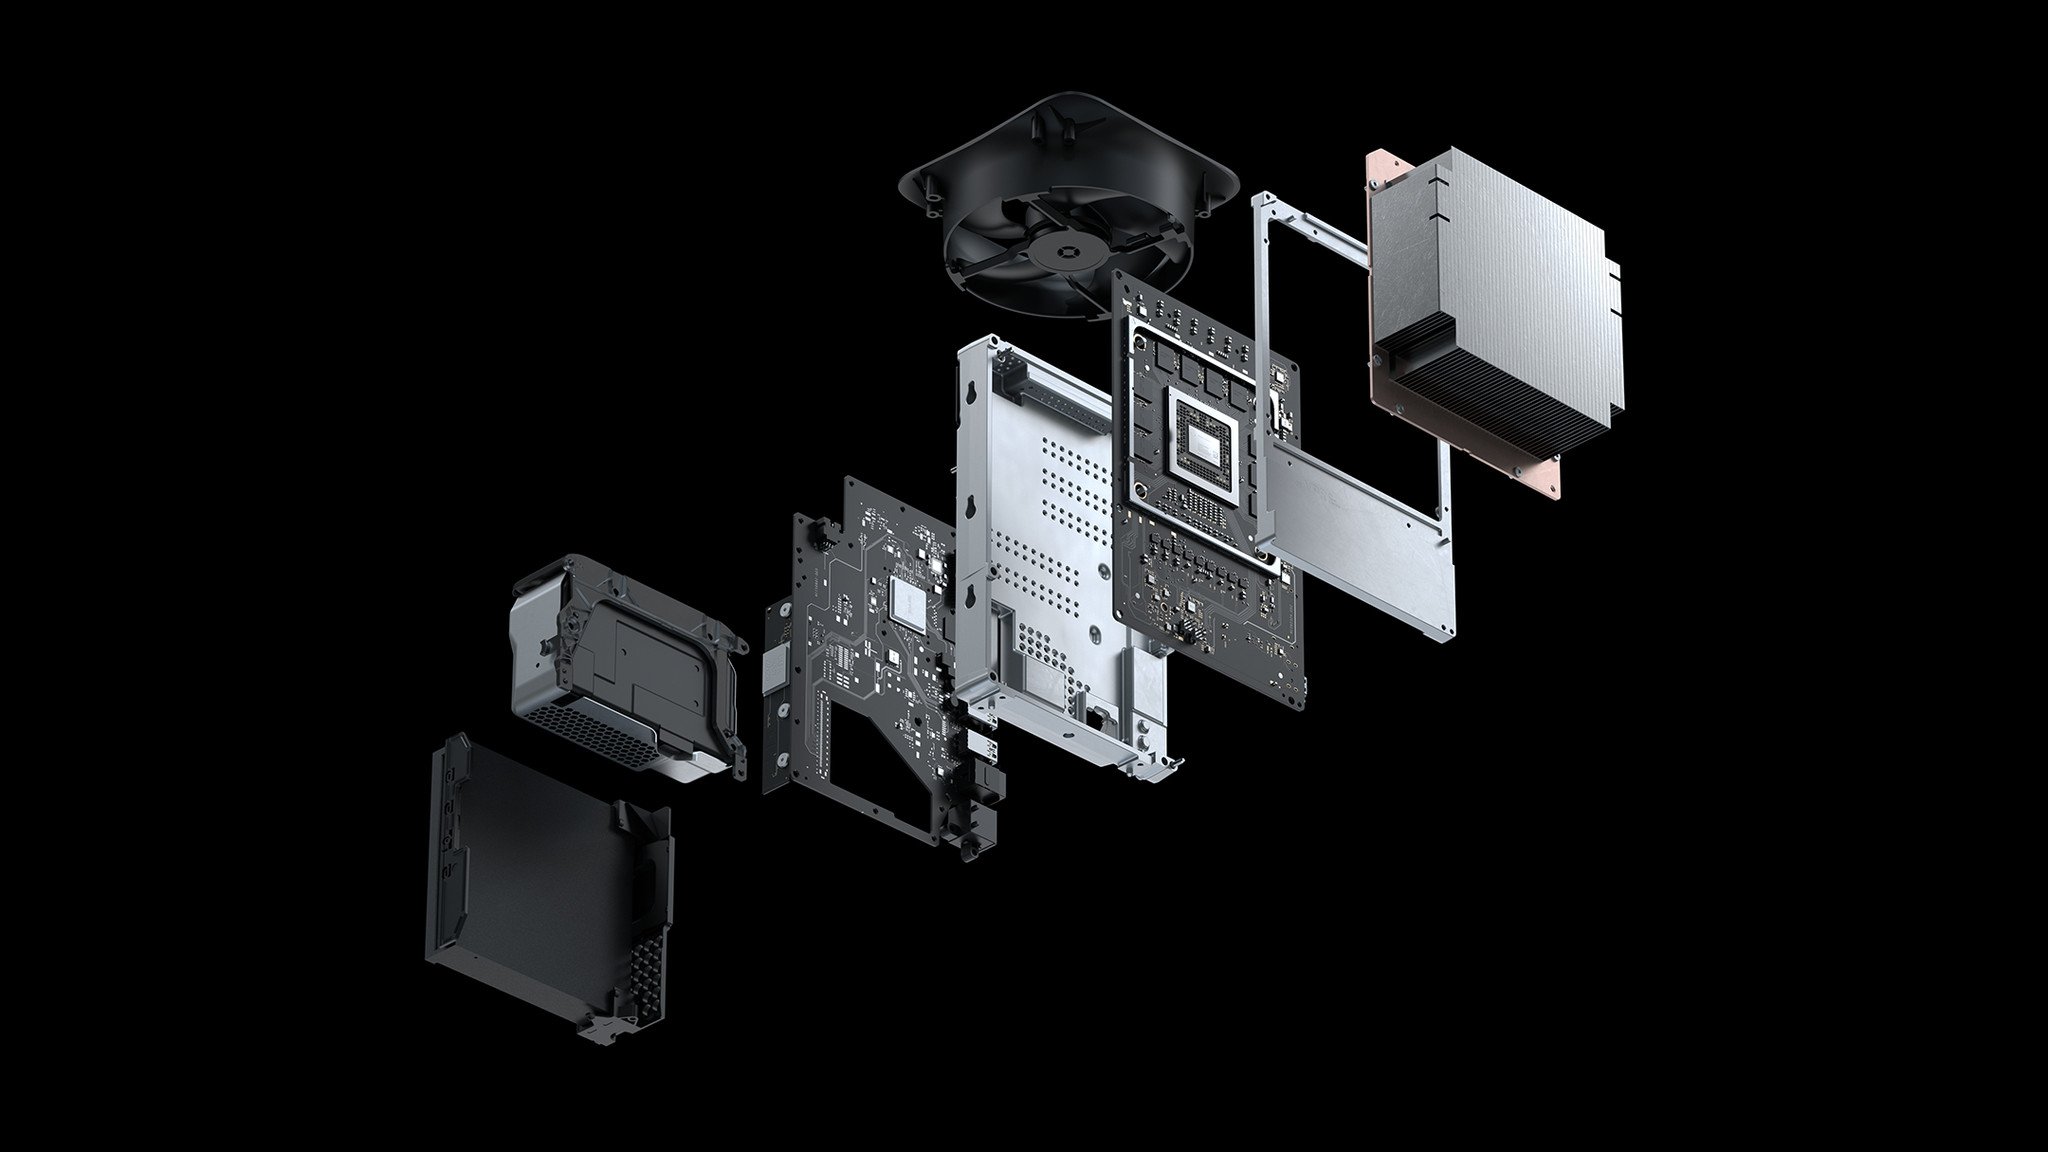 Imagen simulada de los componentes internos de Xbox Series X.